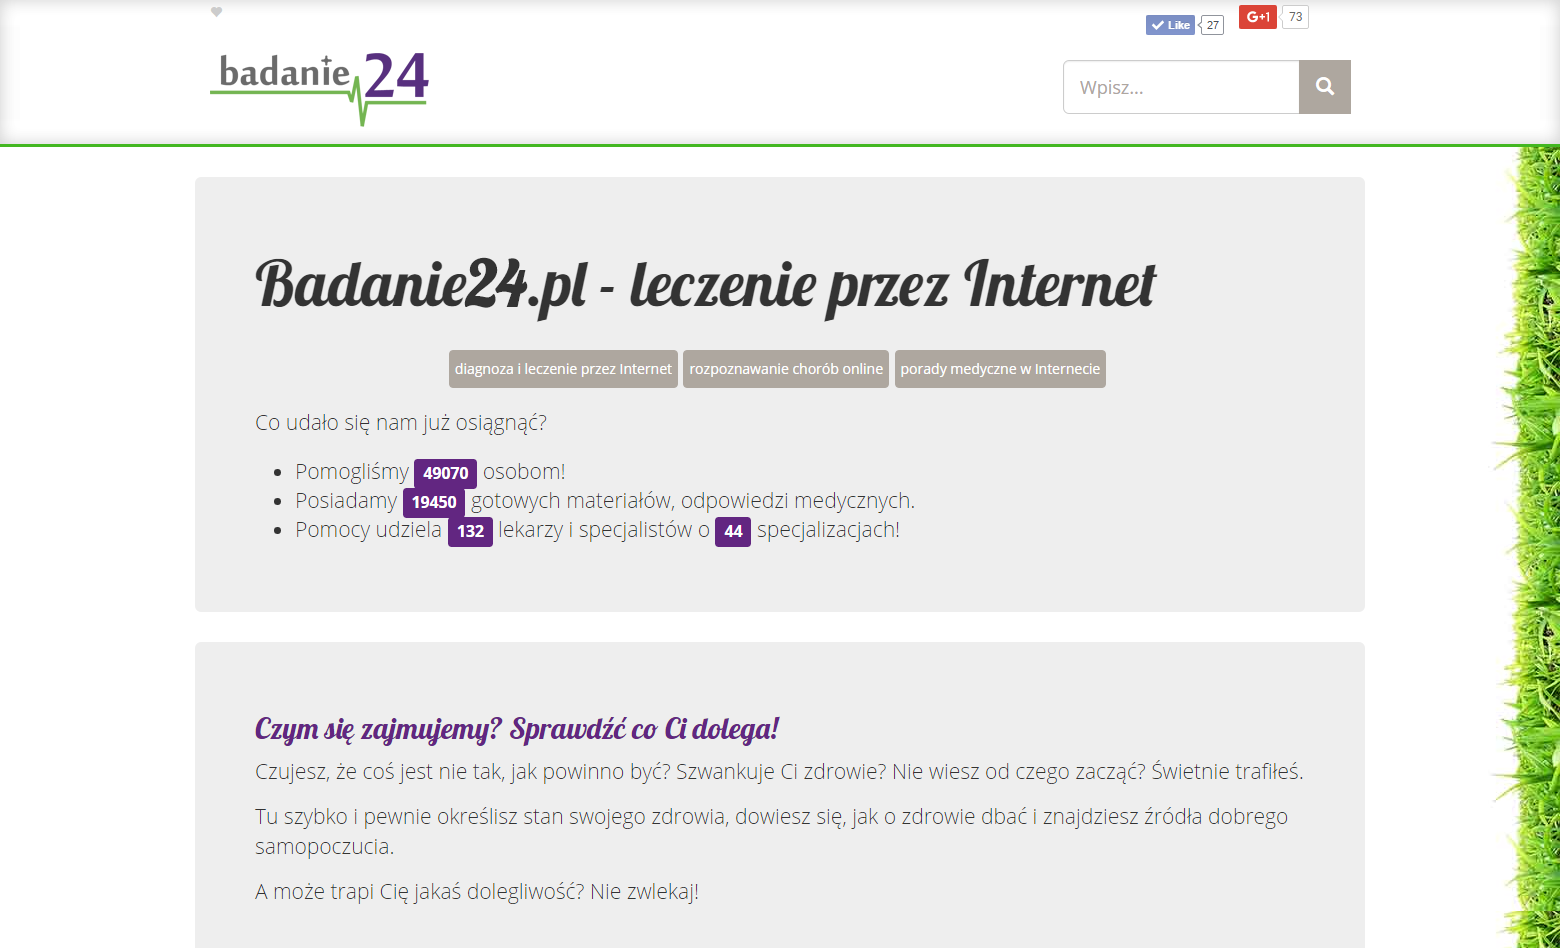 Proyecto Badanie24.pl